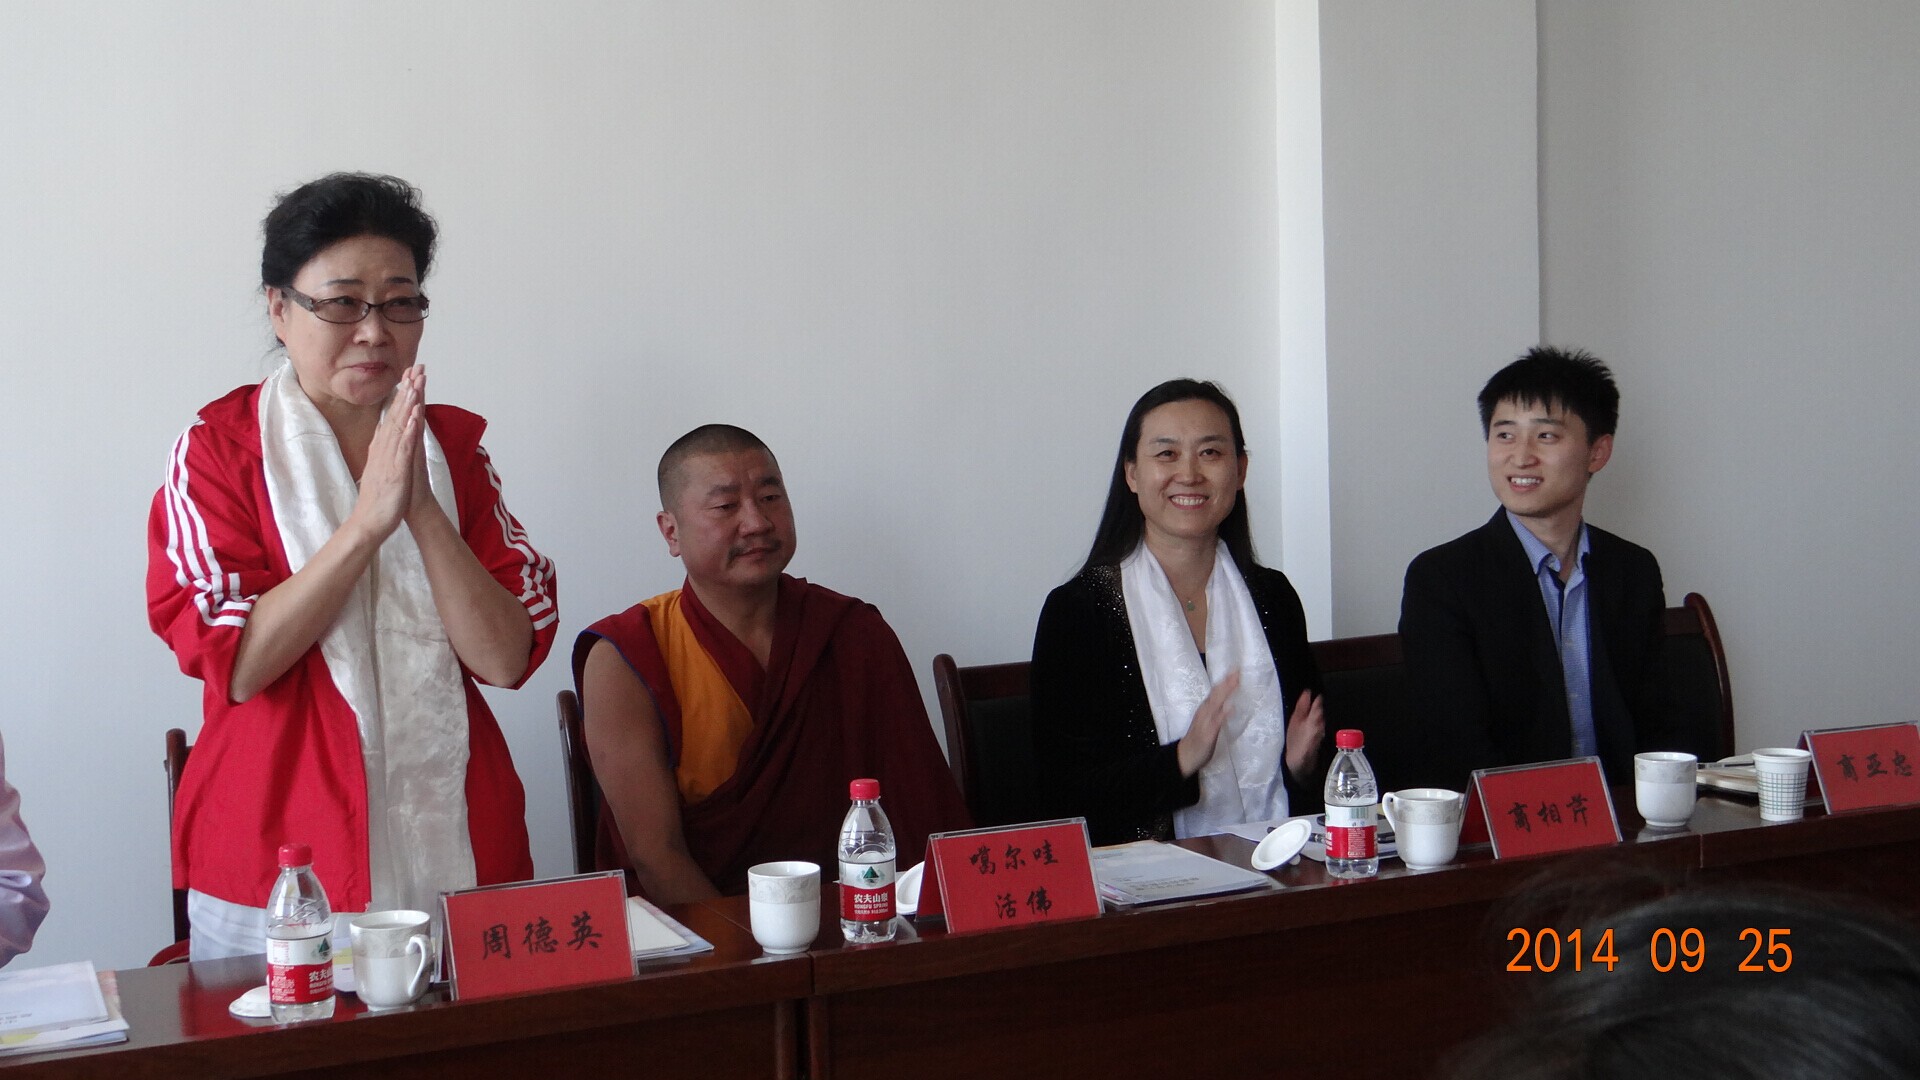 中华儿慈会爱眼专项基金向藏族学生捐赠视力治疗仪